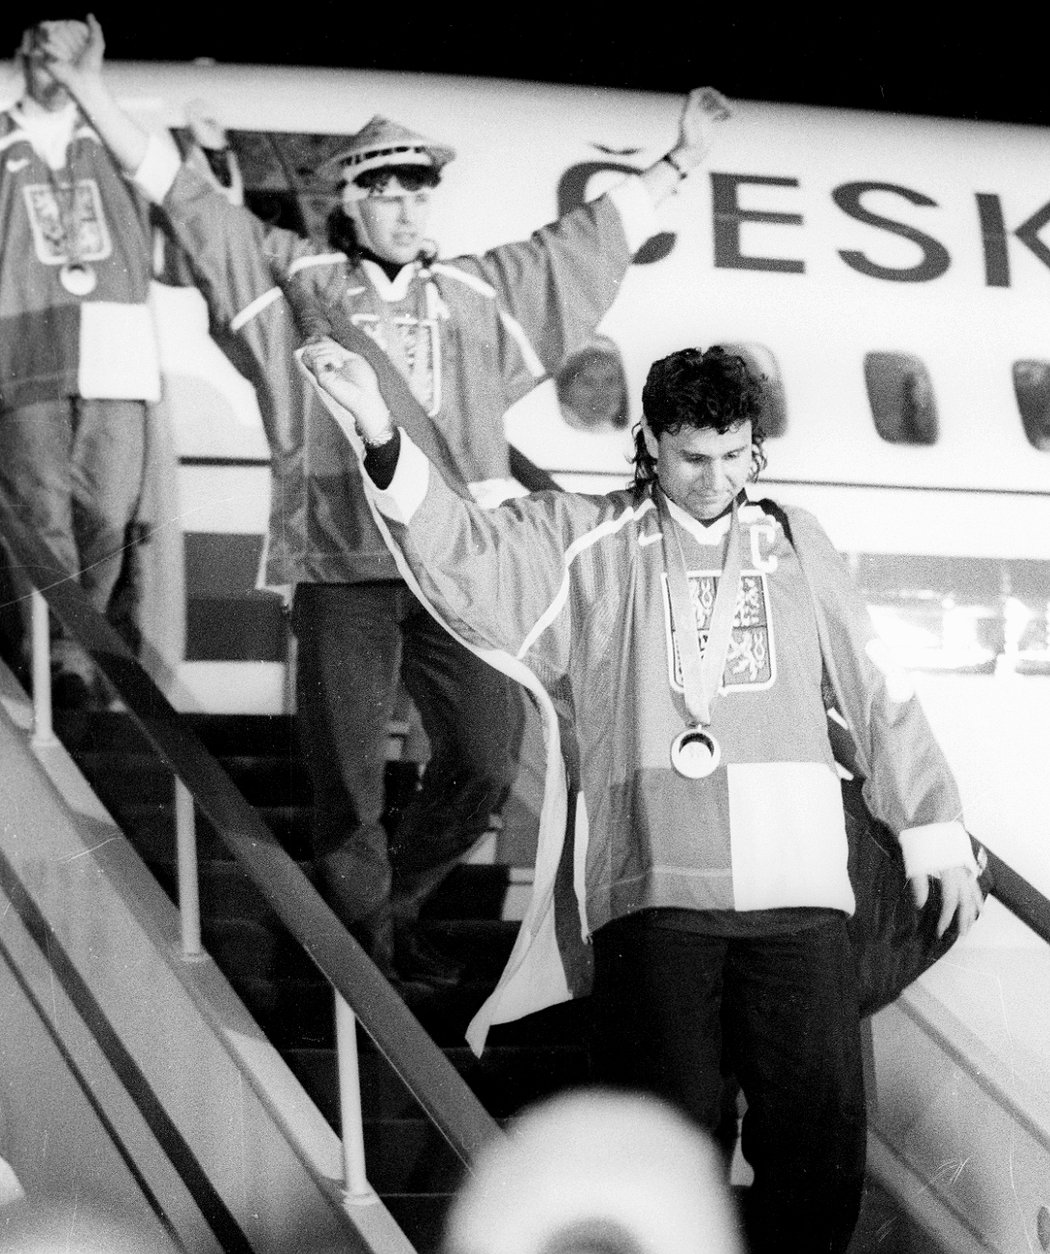 Návrat zlatých českých hokejistů z OH 1998 v Naganu - Vladimír Růžička a Jaromír Jágr.